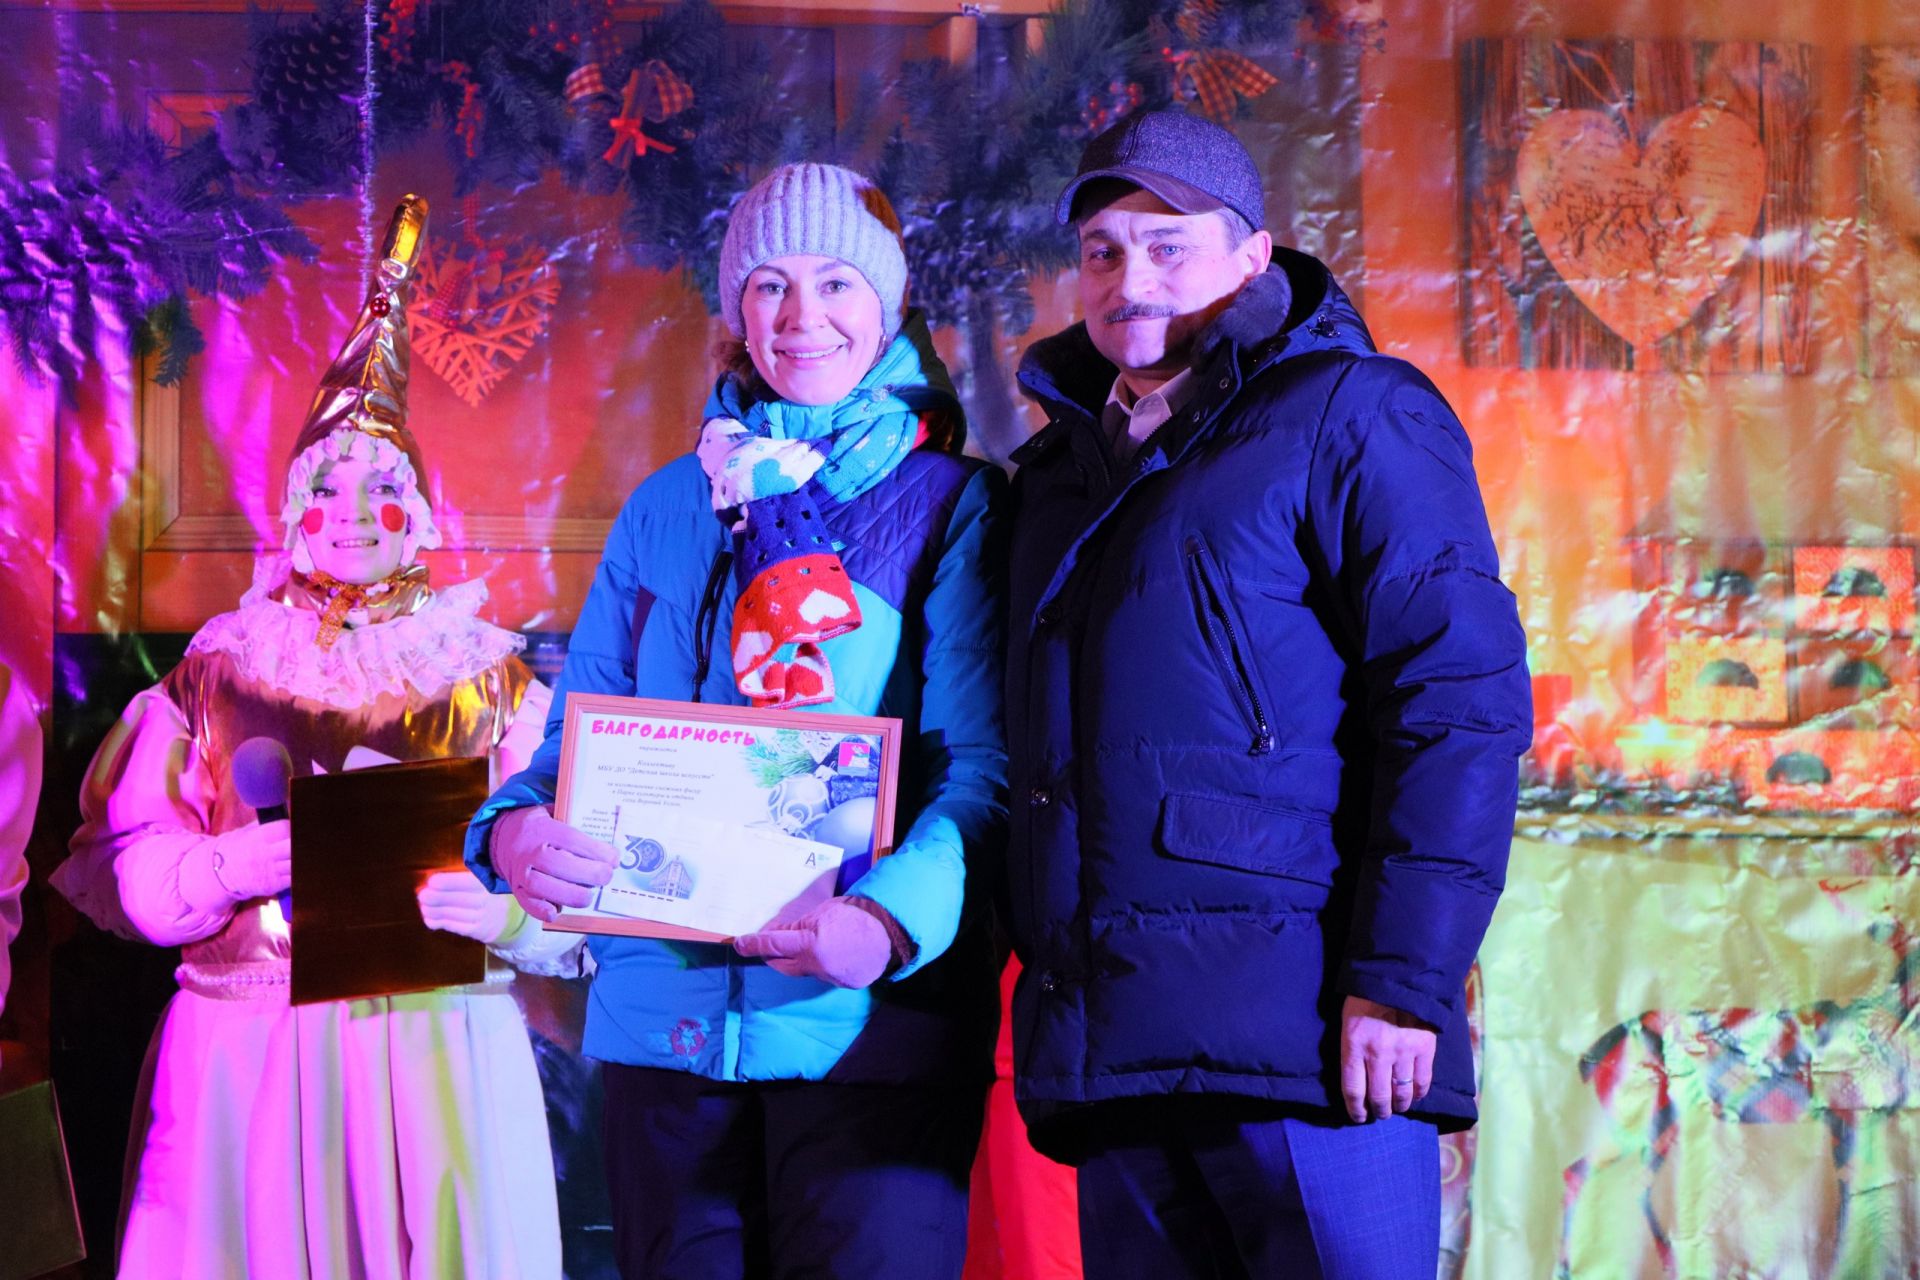 Снежные фигуры Деда Мороза и Снегурочки украсили Парк культуры и отдыха в Верхнем Услоне